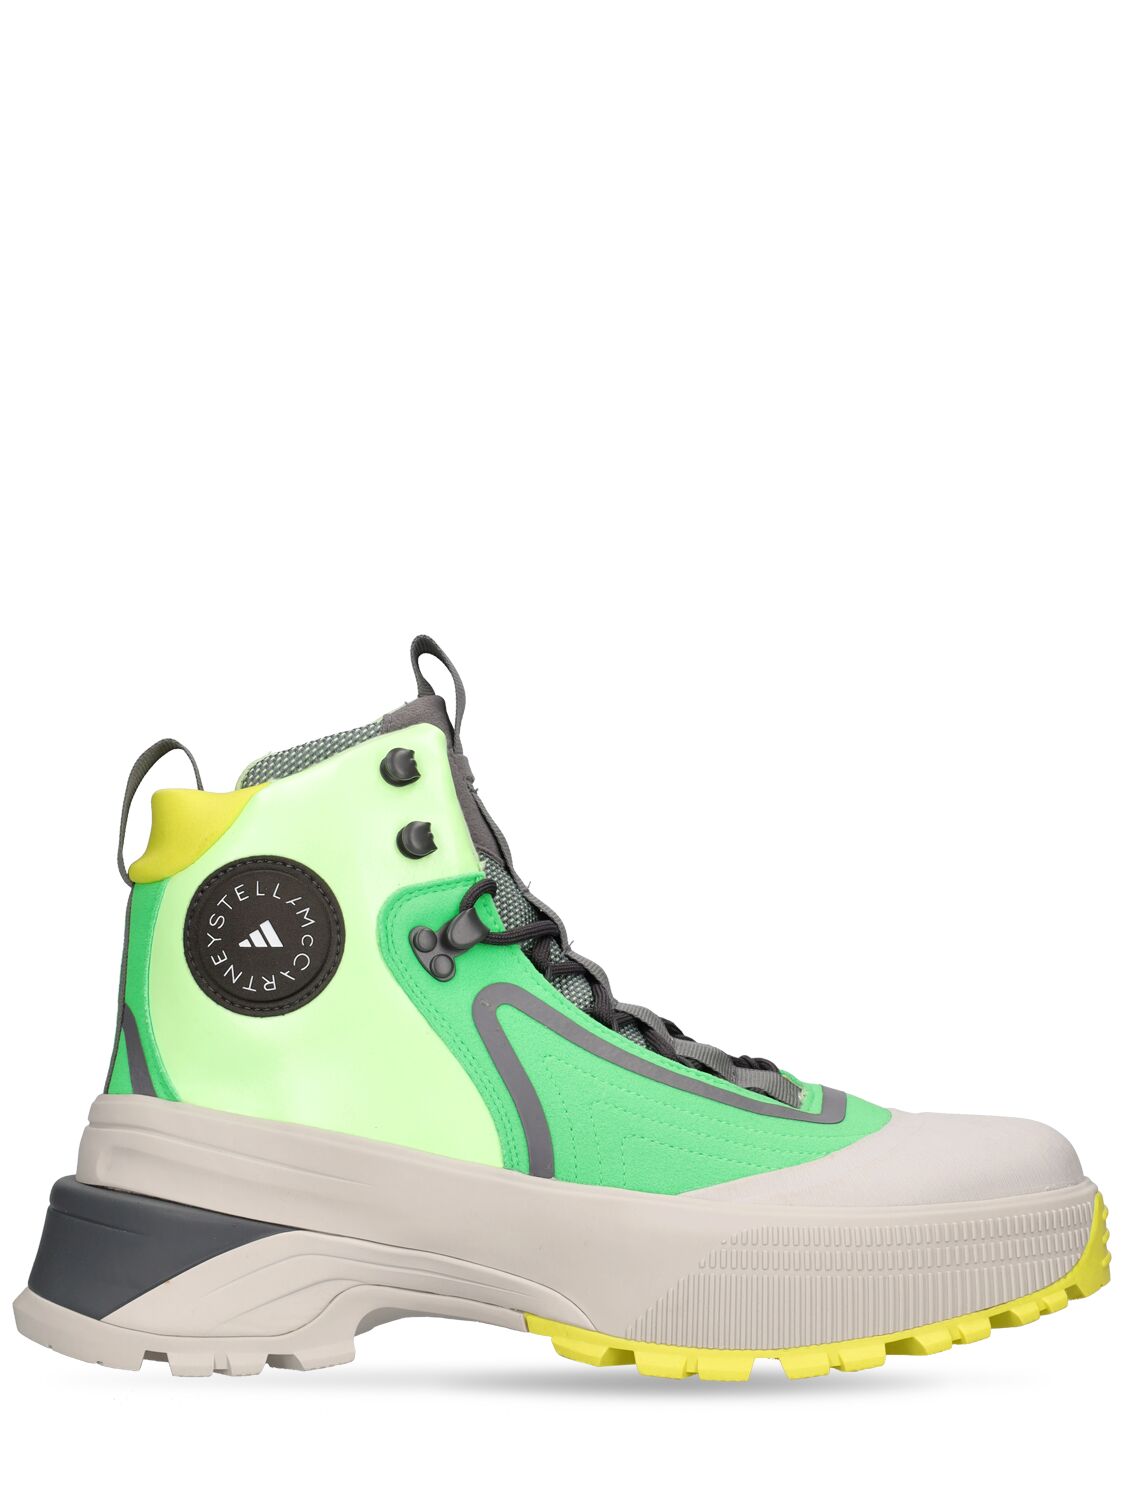 Adidas By Stella Mccartney Terrex Hiking靴子 In Solar Lime,green